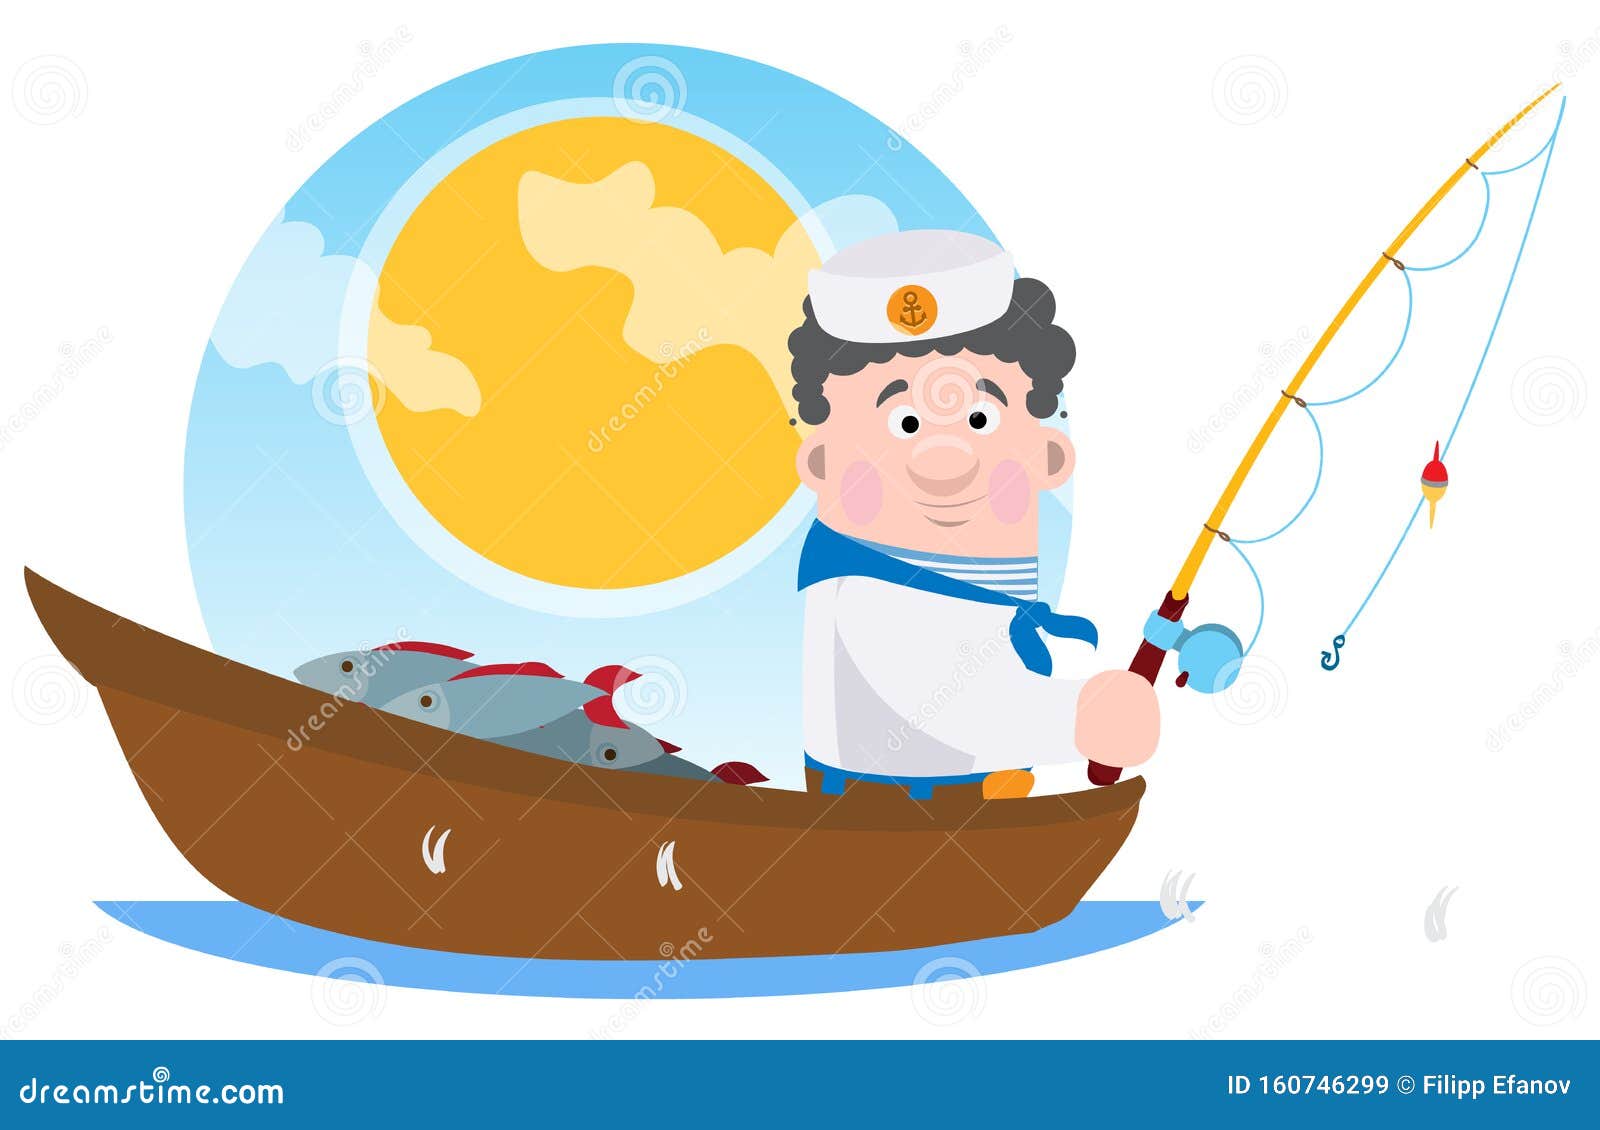 Моряк ловит рыбу. Моряки ловят рыбу. Морячок ловит рыбу. Дети рыбачат рисунок. Кораблю ловит рыбу вектор.